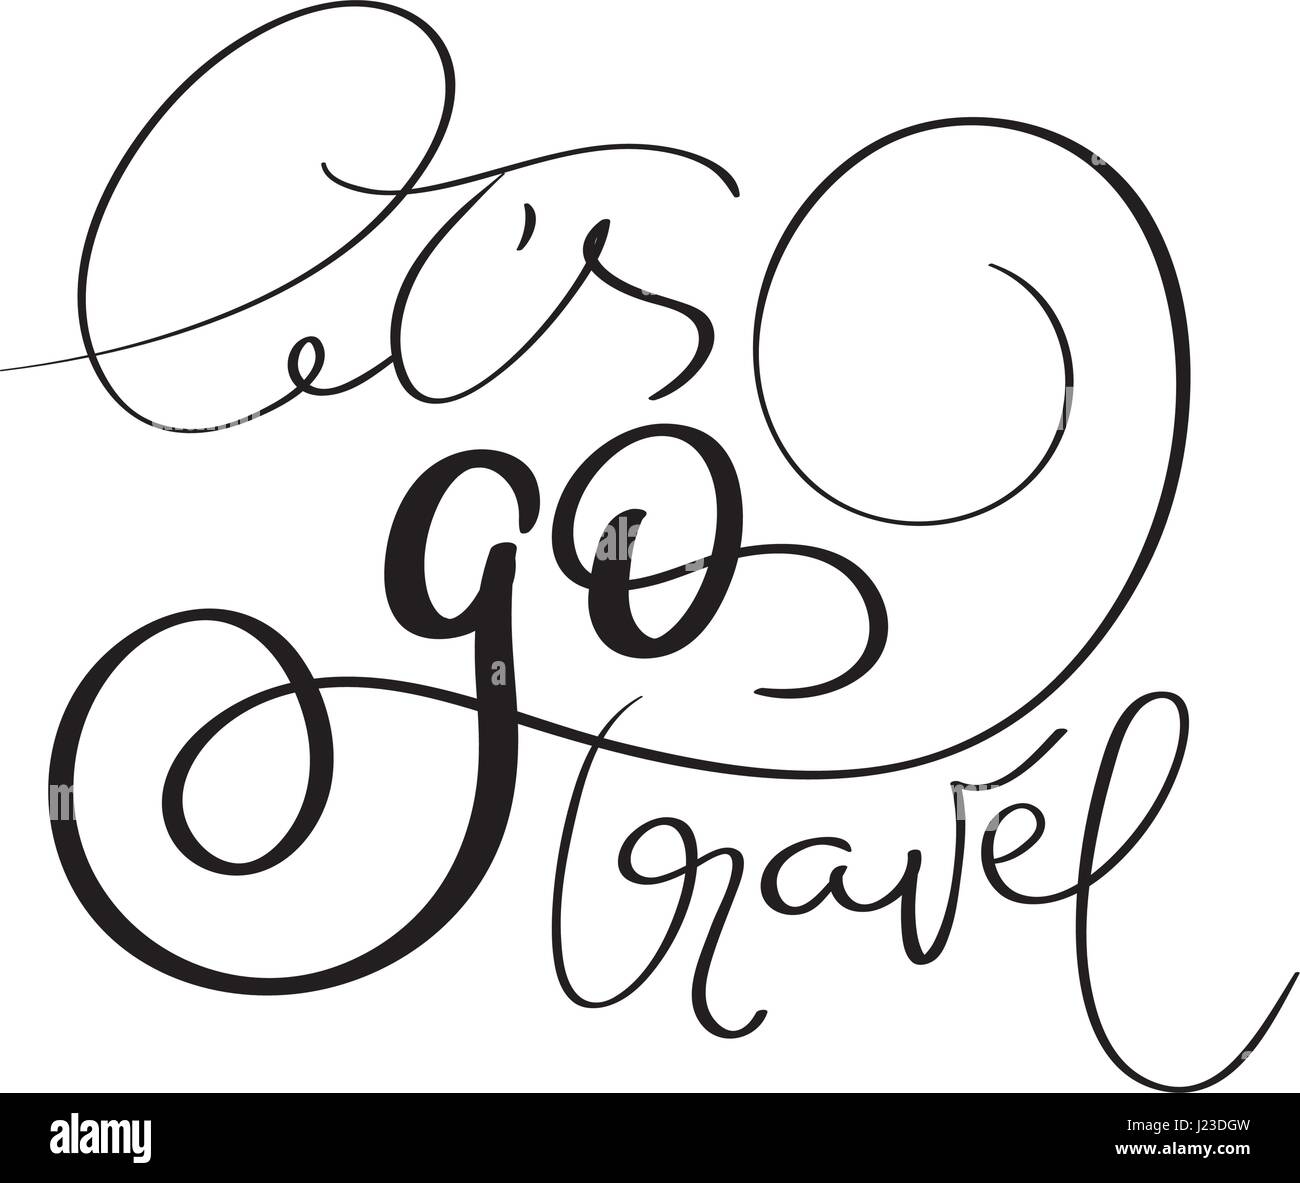 Go Travel permet de vecteur fait main vintage texte sur fond blanc. Lettrage calligraphie illustration EPS10 Illustration de Vecteur